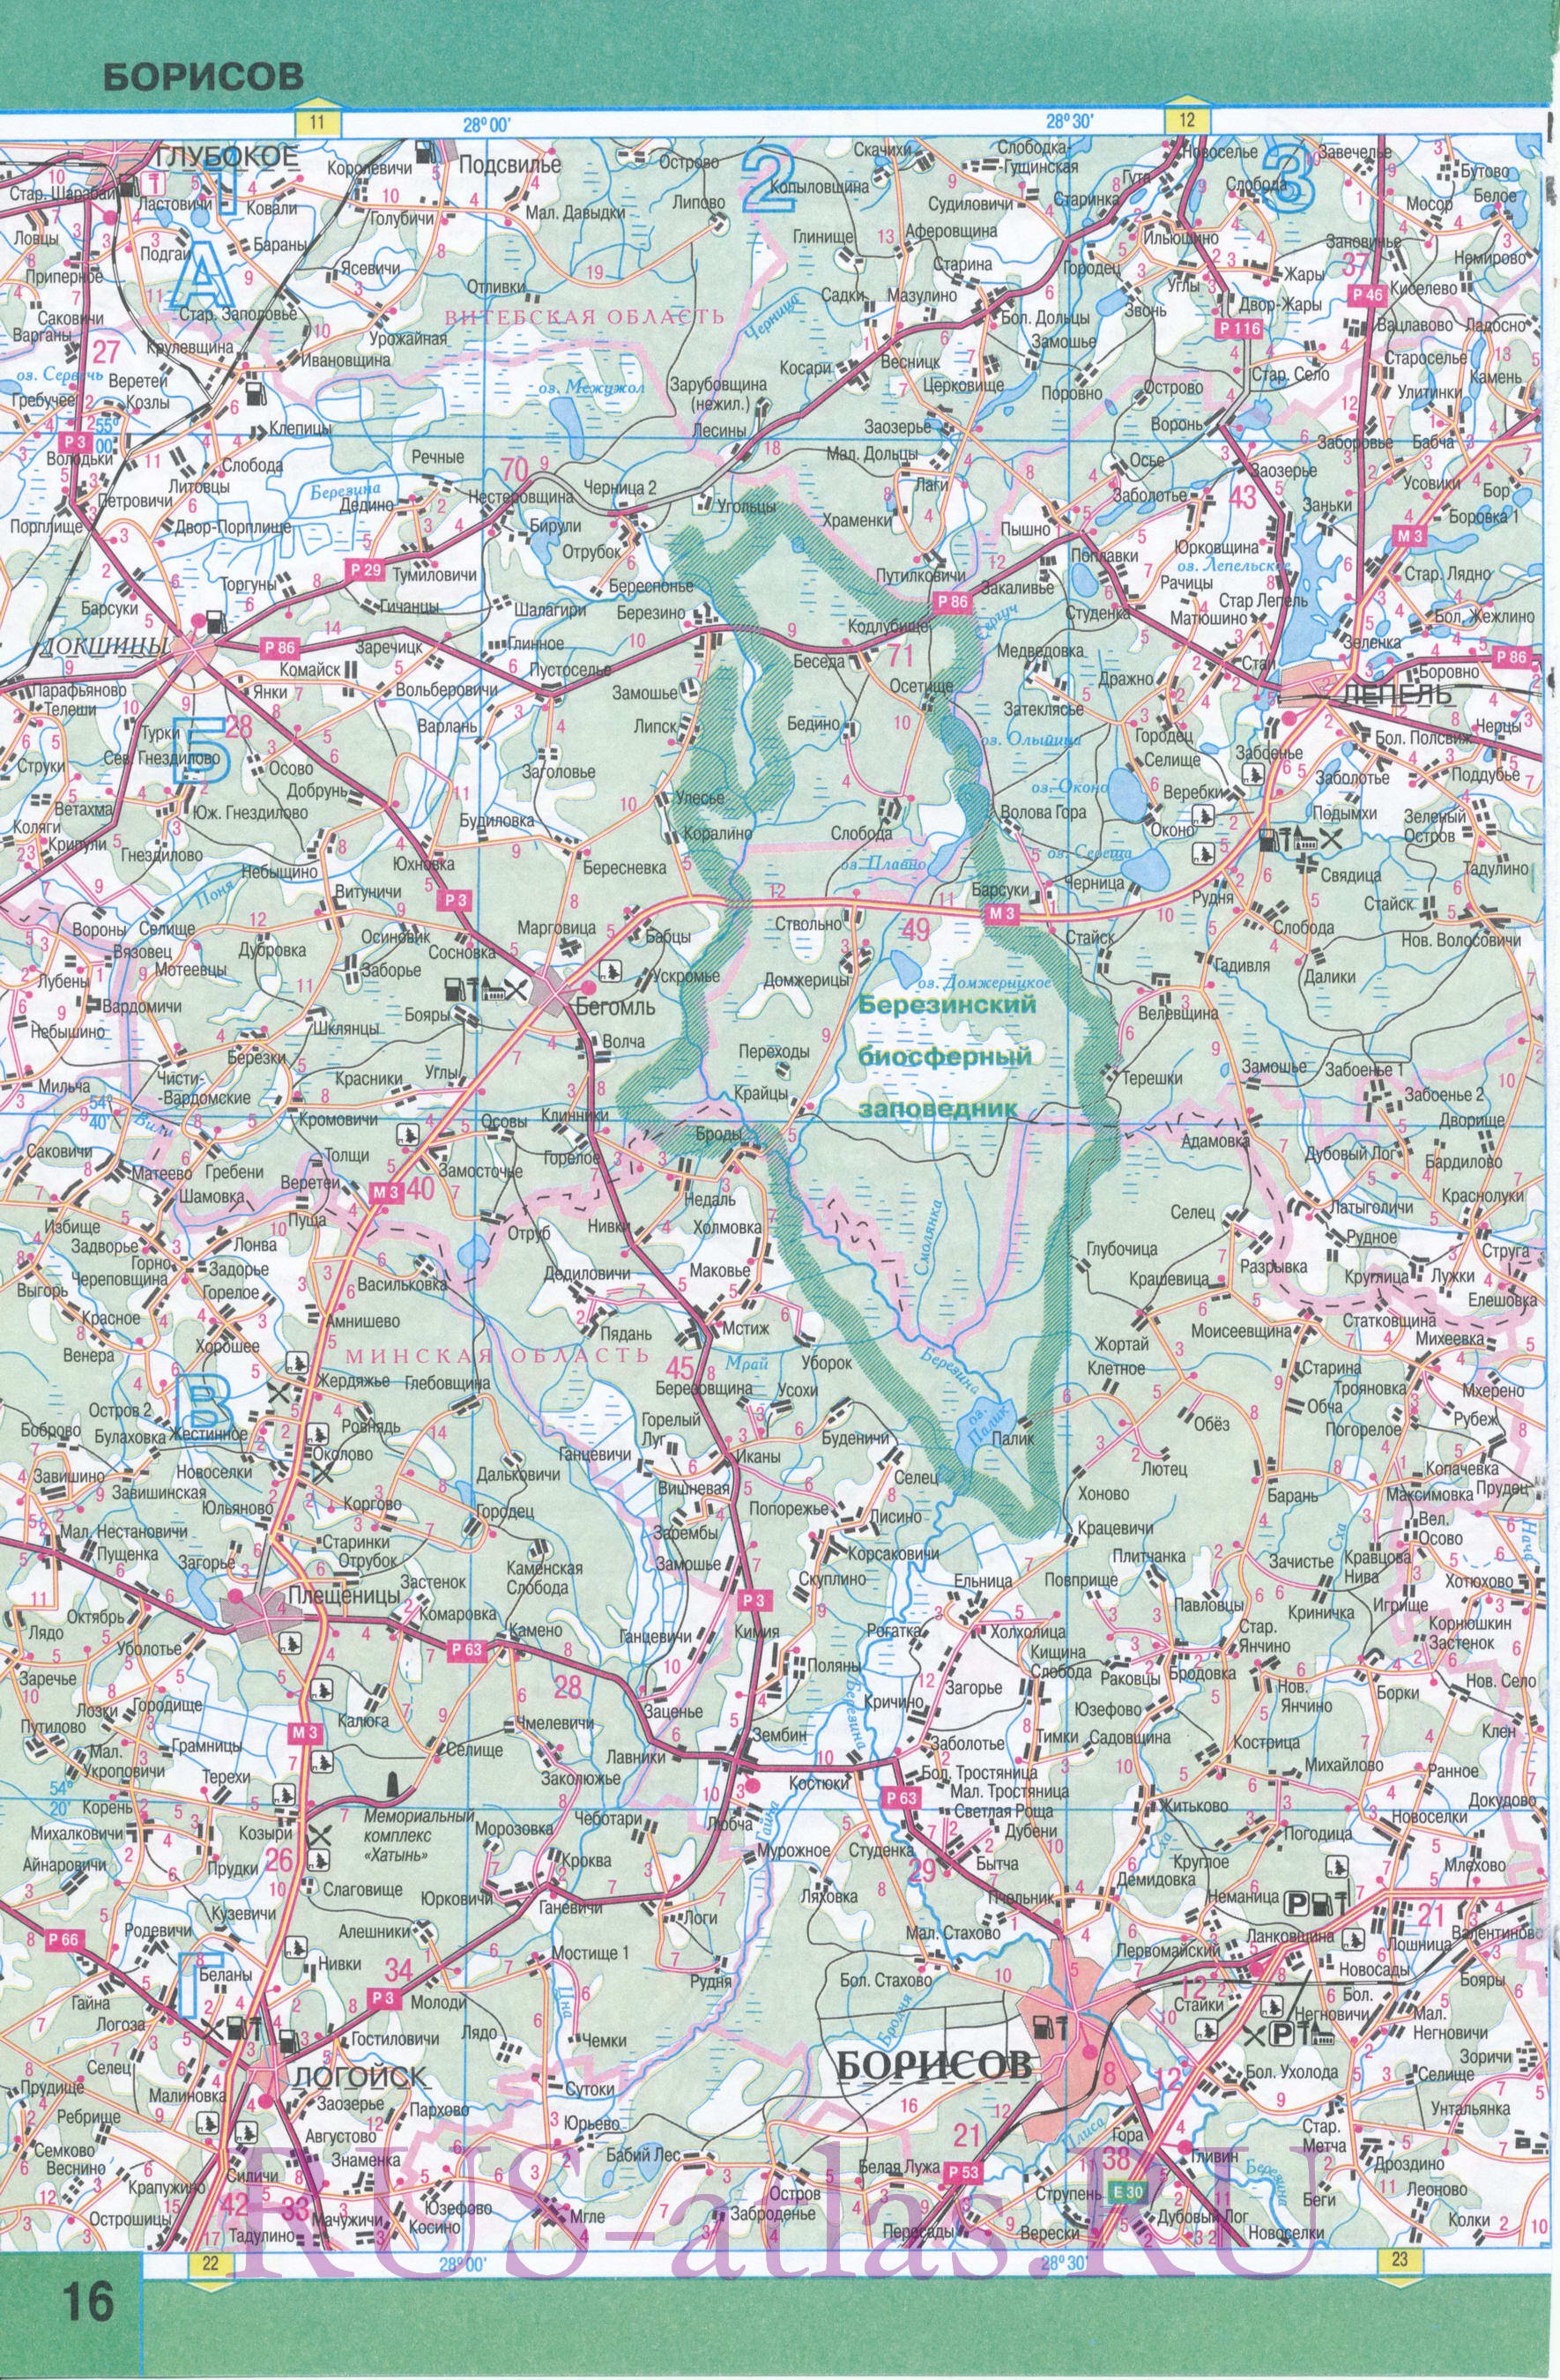 Карта Витебской области. Карта автомобильных дорог Витебской области Беларуси. Площадь Витебской обл 40 тыс кв км, население 1 265 300 человек, A1 - 